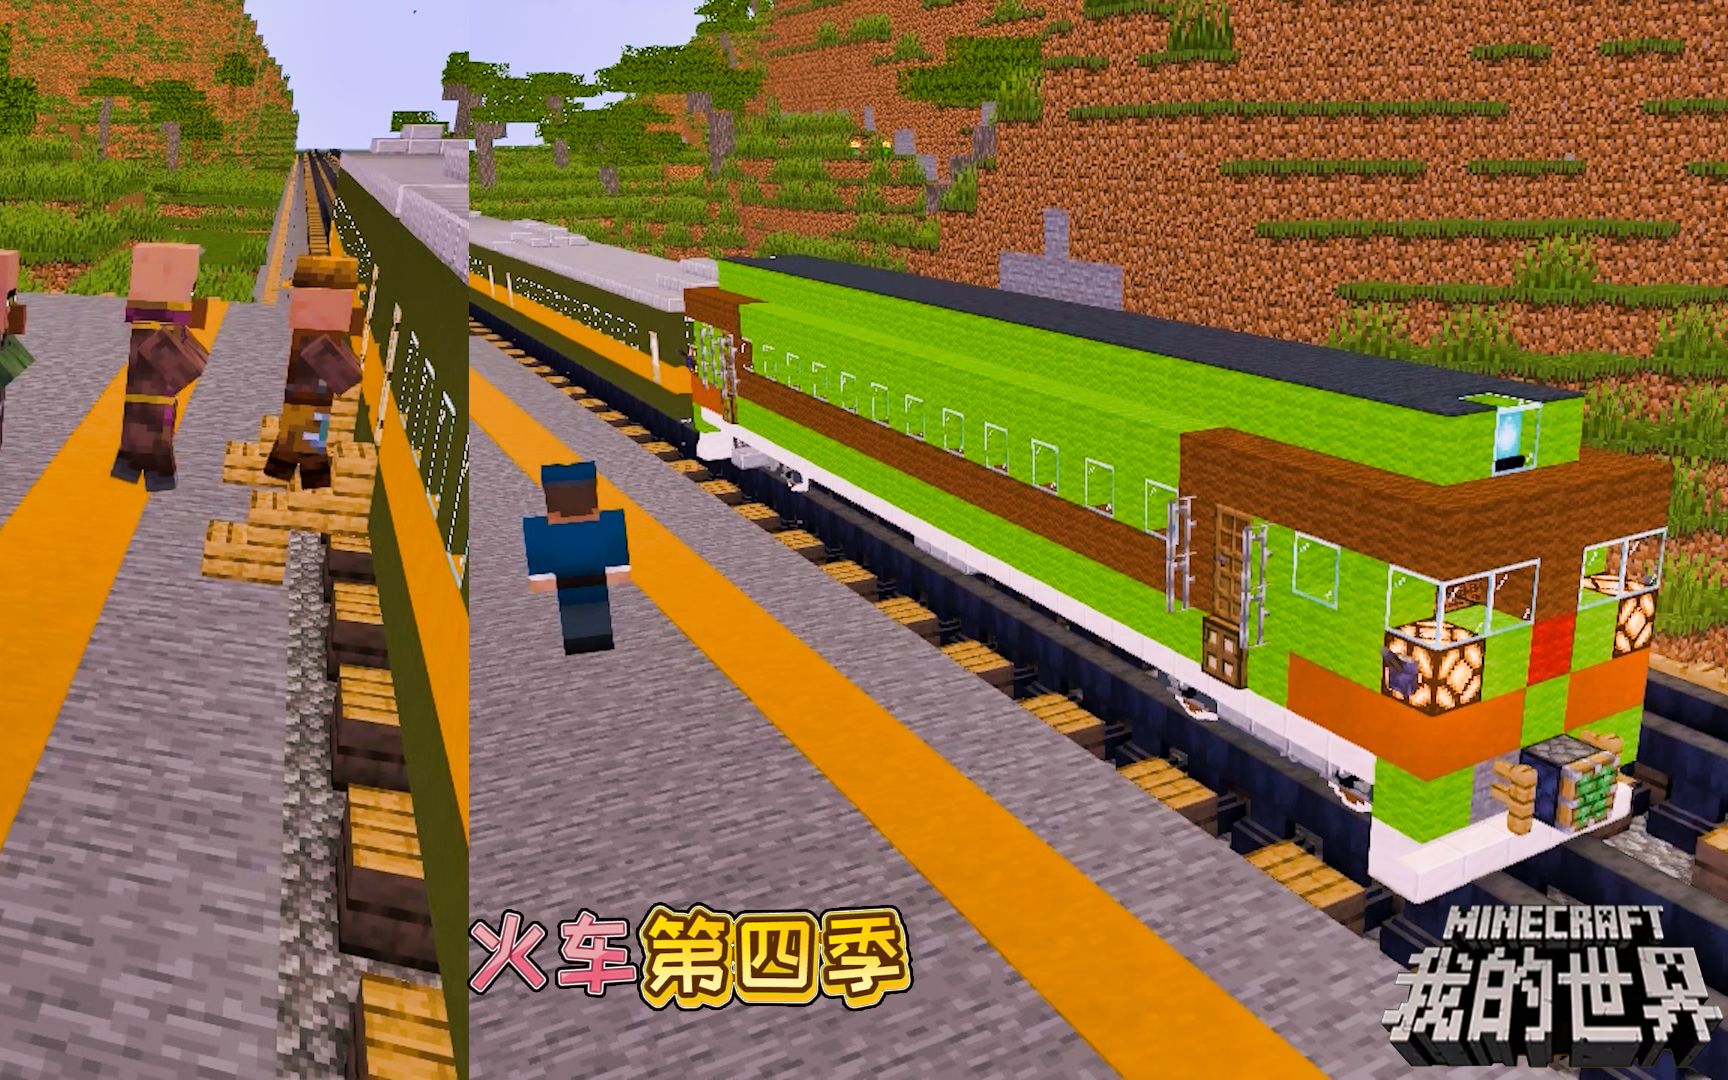 我的世界火车第四季：火车进站，他们到达了元夕_哔哩哔哩 (゜-゜)つロ 干杯~-bilibili